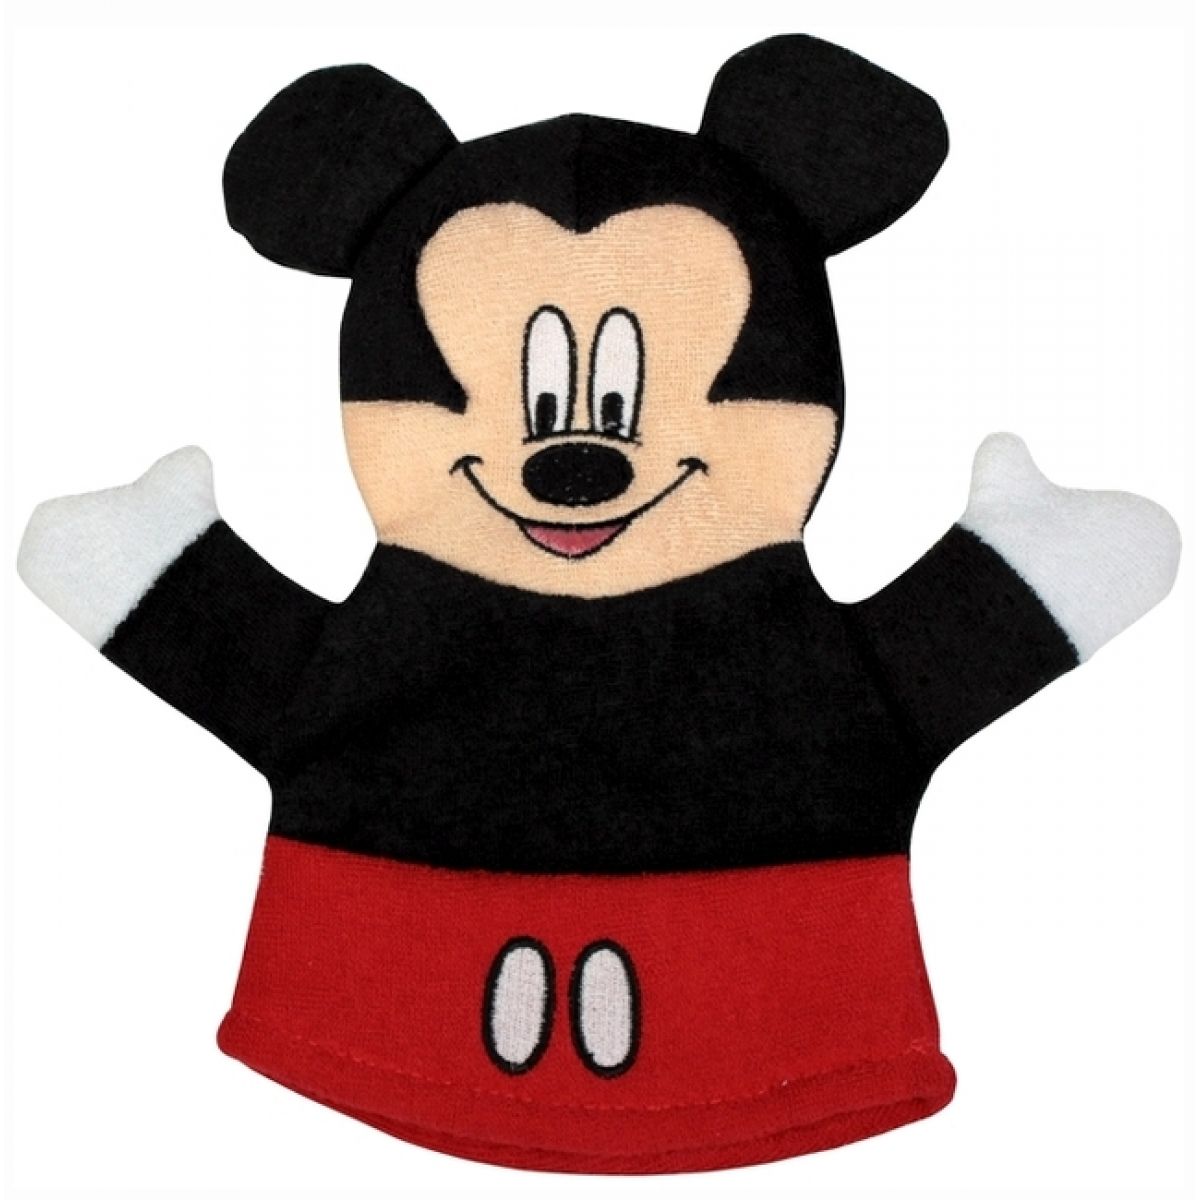 Mickey Mouse mycí žínka - Mickey